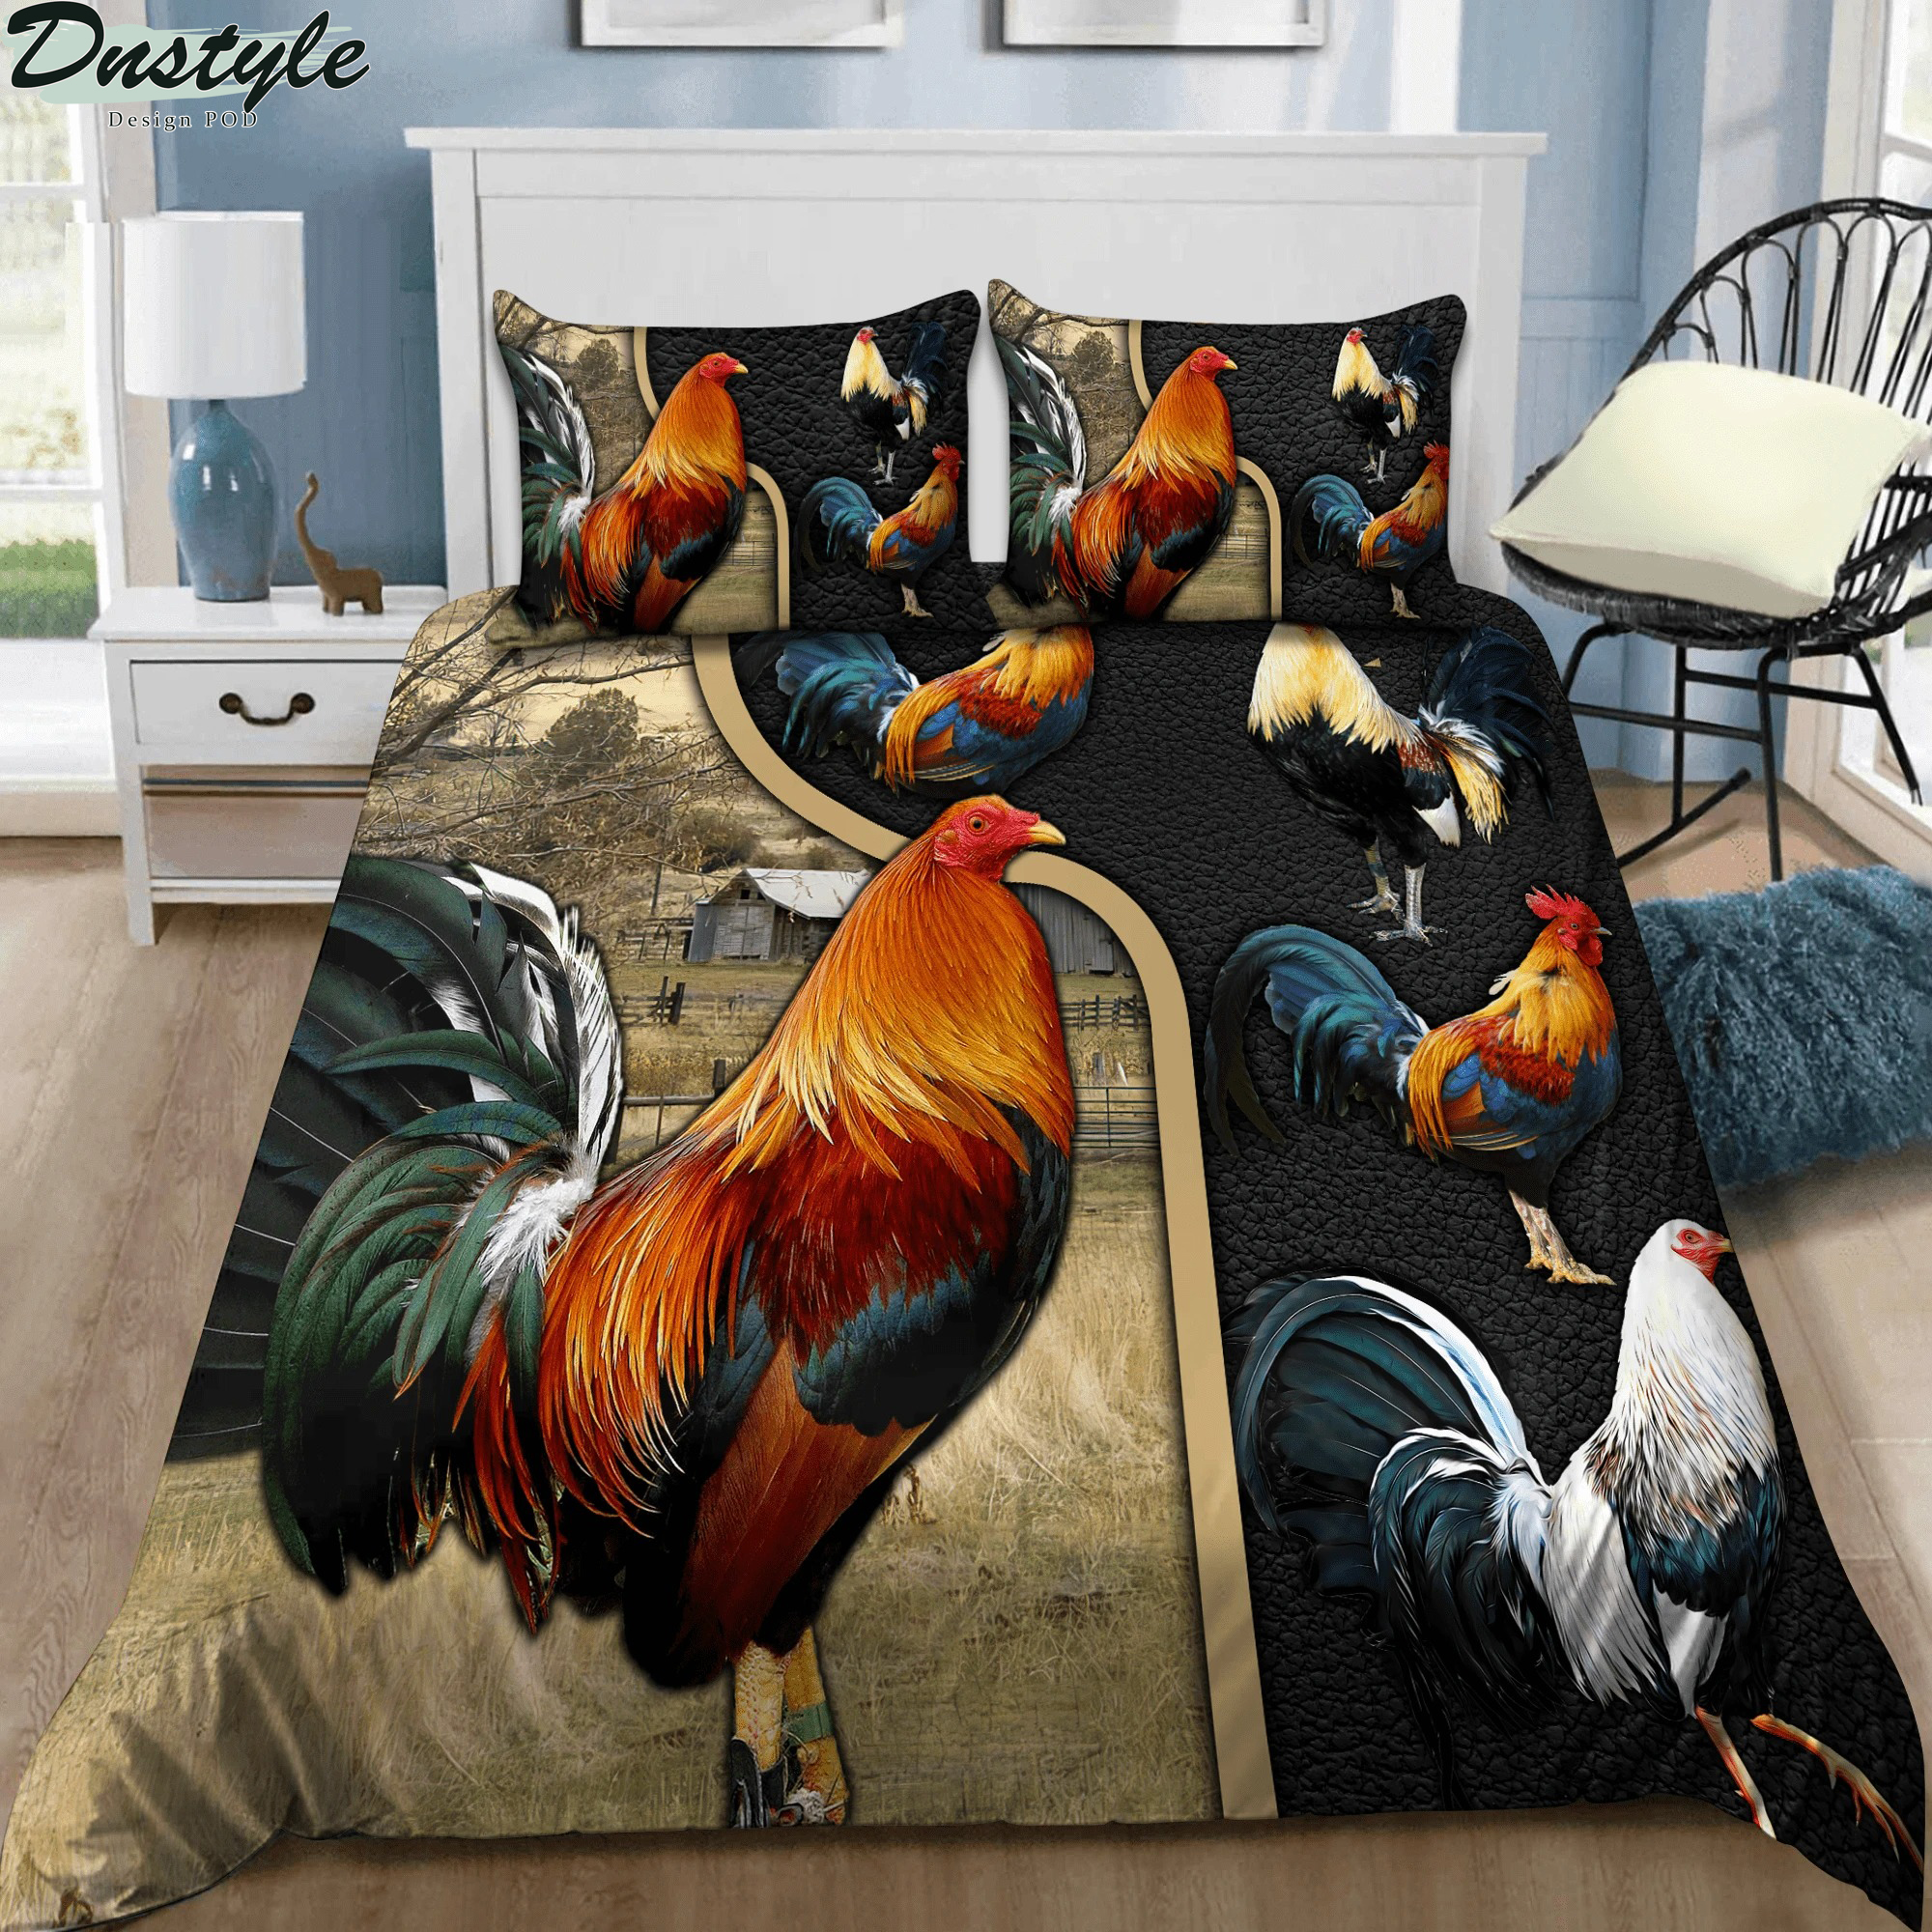 Rooster bedding set